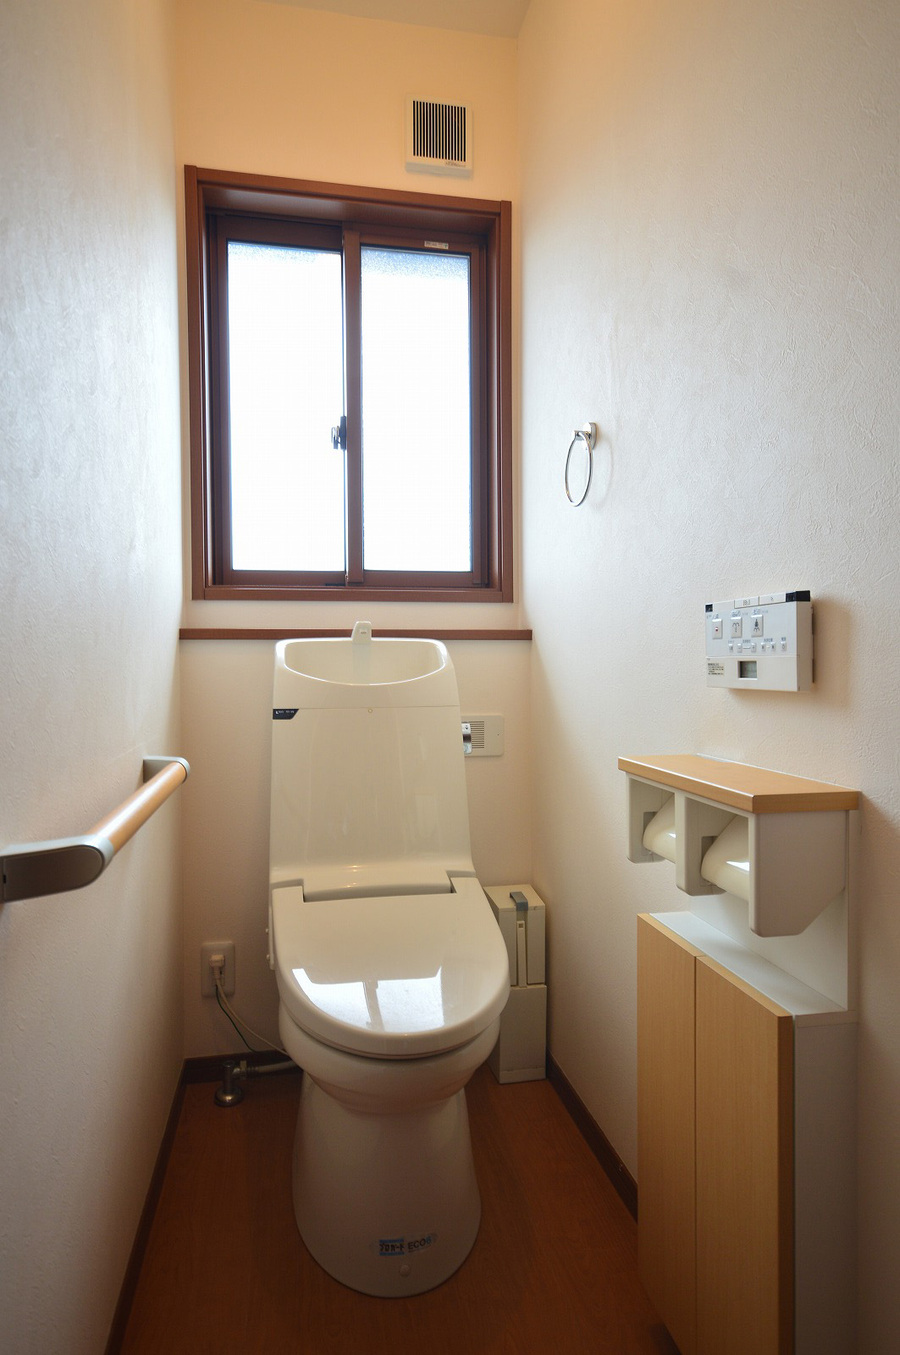 2F　トイレ　トイレットペーパーなどを収納出来るスペースもあります。